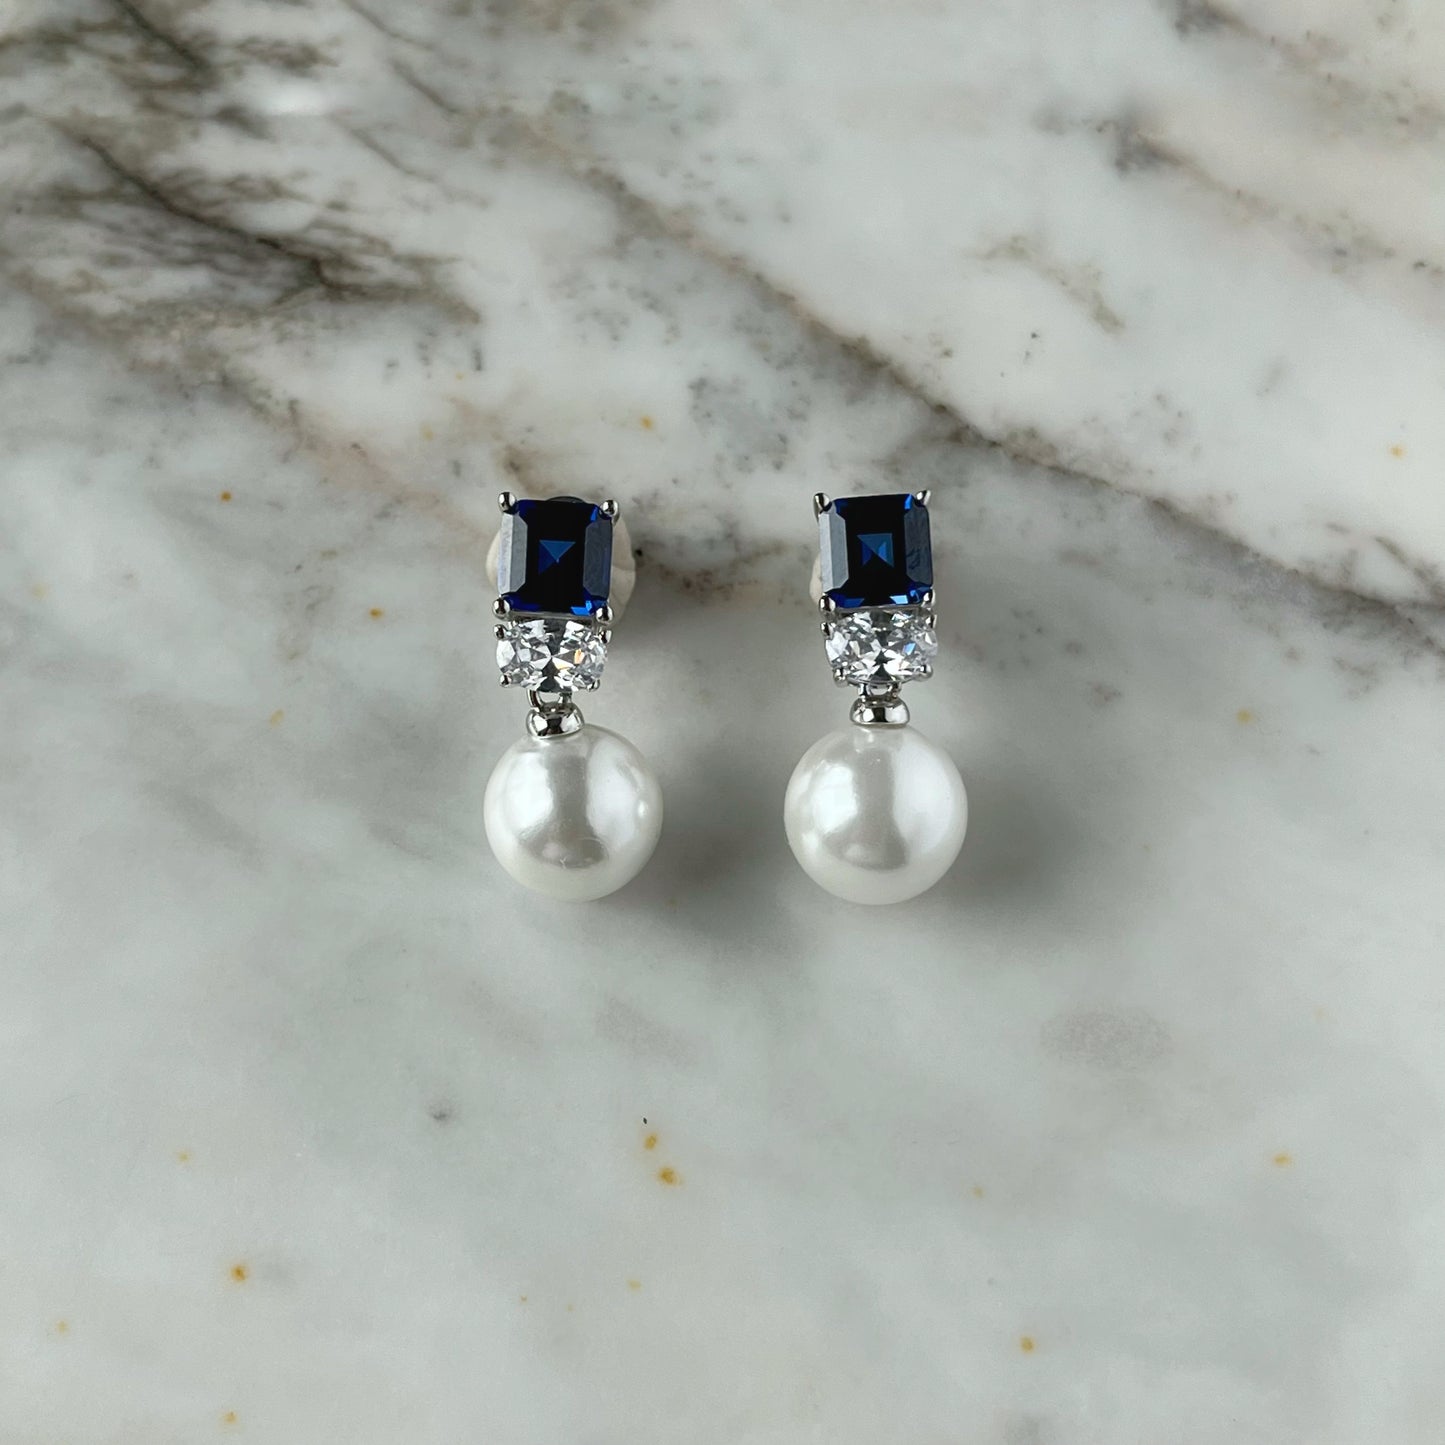 Aretes en plata con baño de platino con circonita azul y perla de cristal